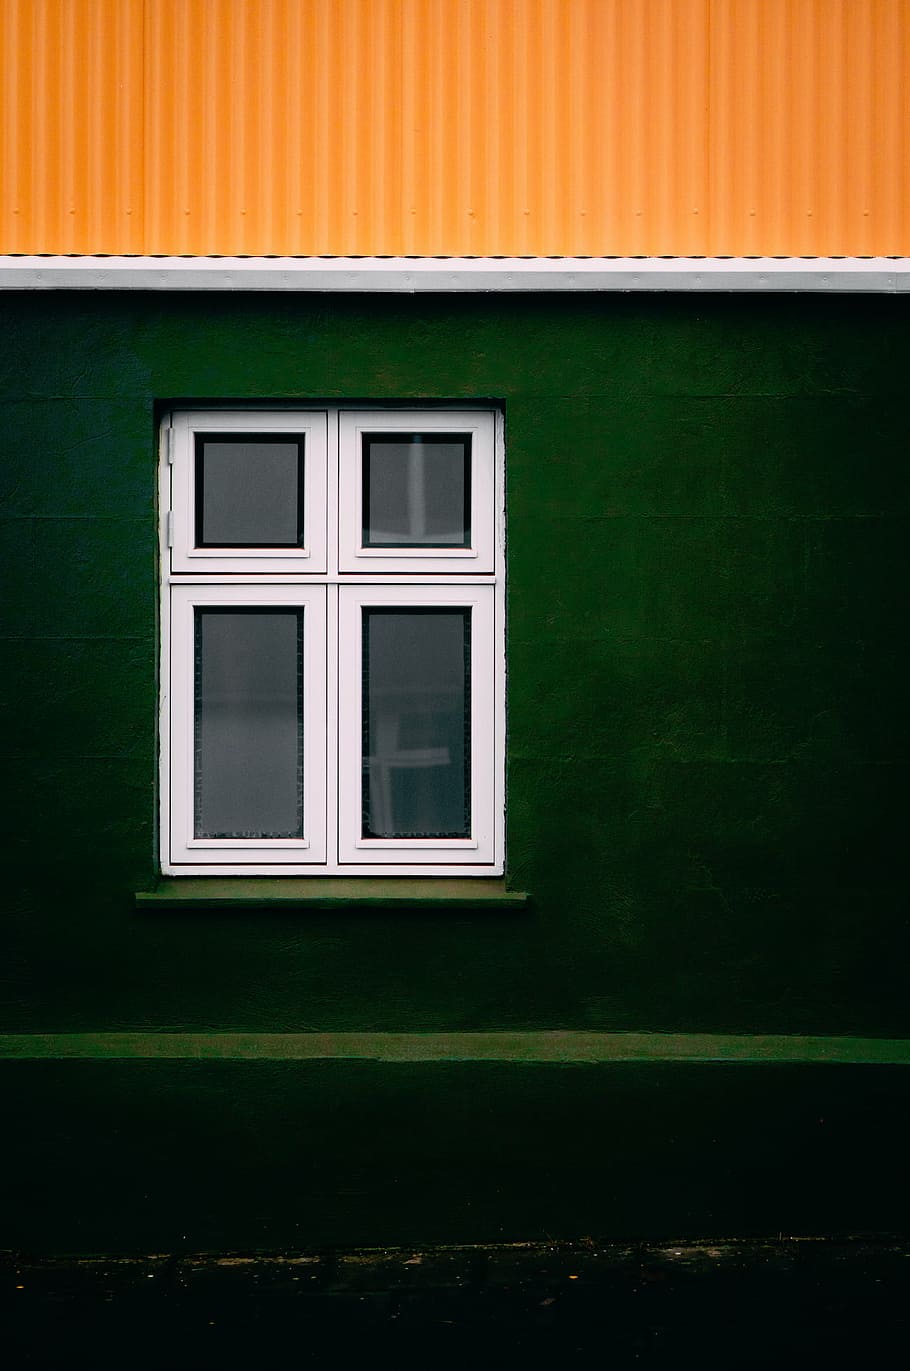 retangular, branco, moldura janela de vidro, lugares, janelas, estrutura, vidro, verde, amarelo, janela